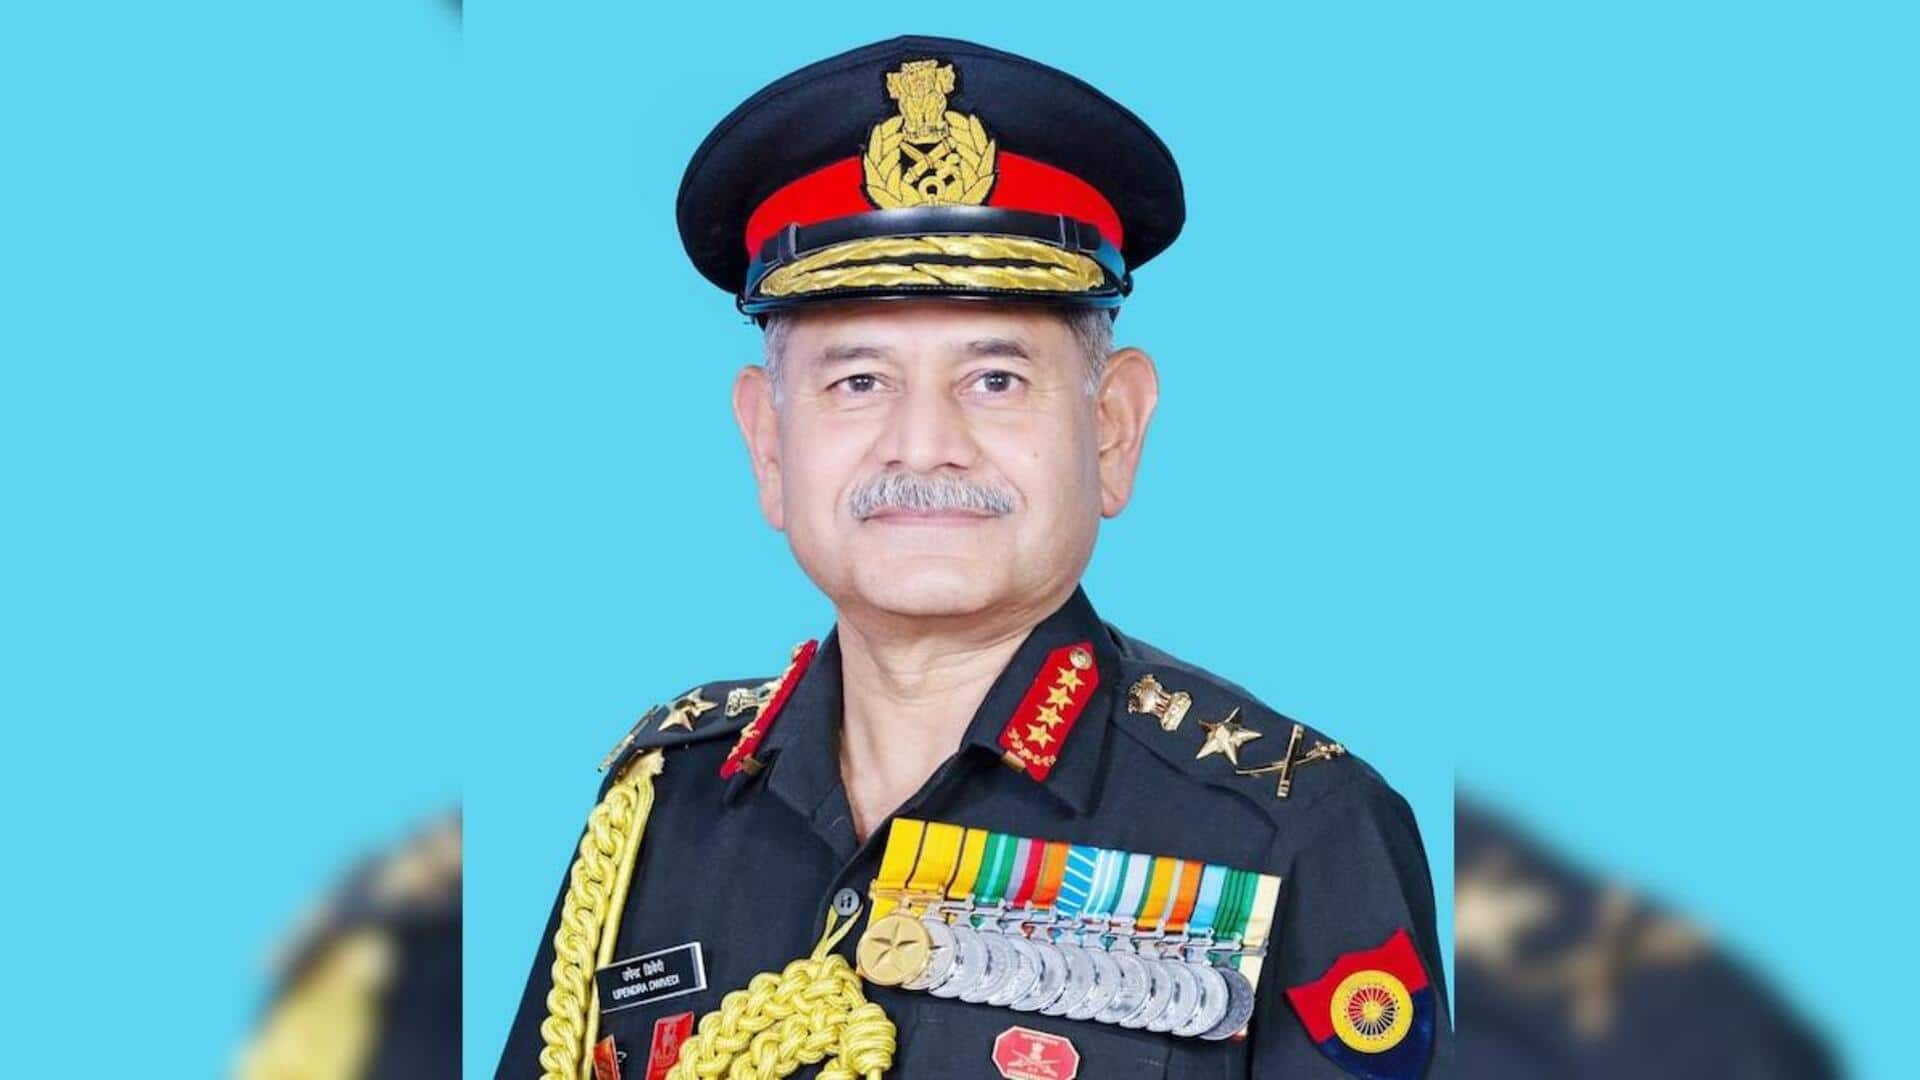 जनरल उपेंद्र द्विवेदी ने संभाला नए सेना प्रमुख का पदभार, जनरल मनोज पांडे हुए सेवानिवृत्त